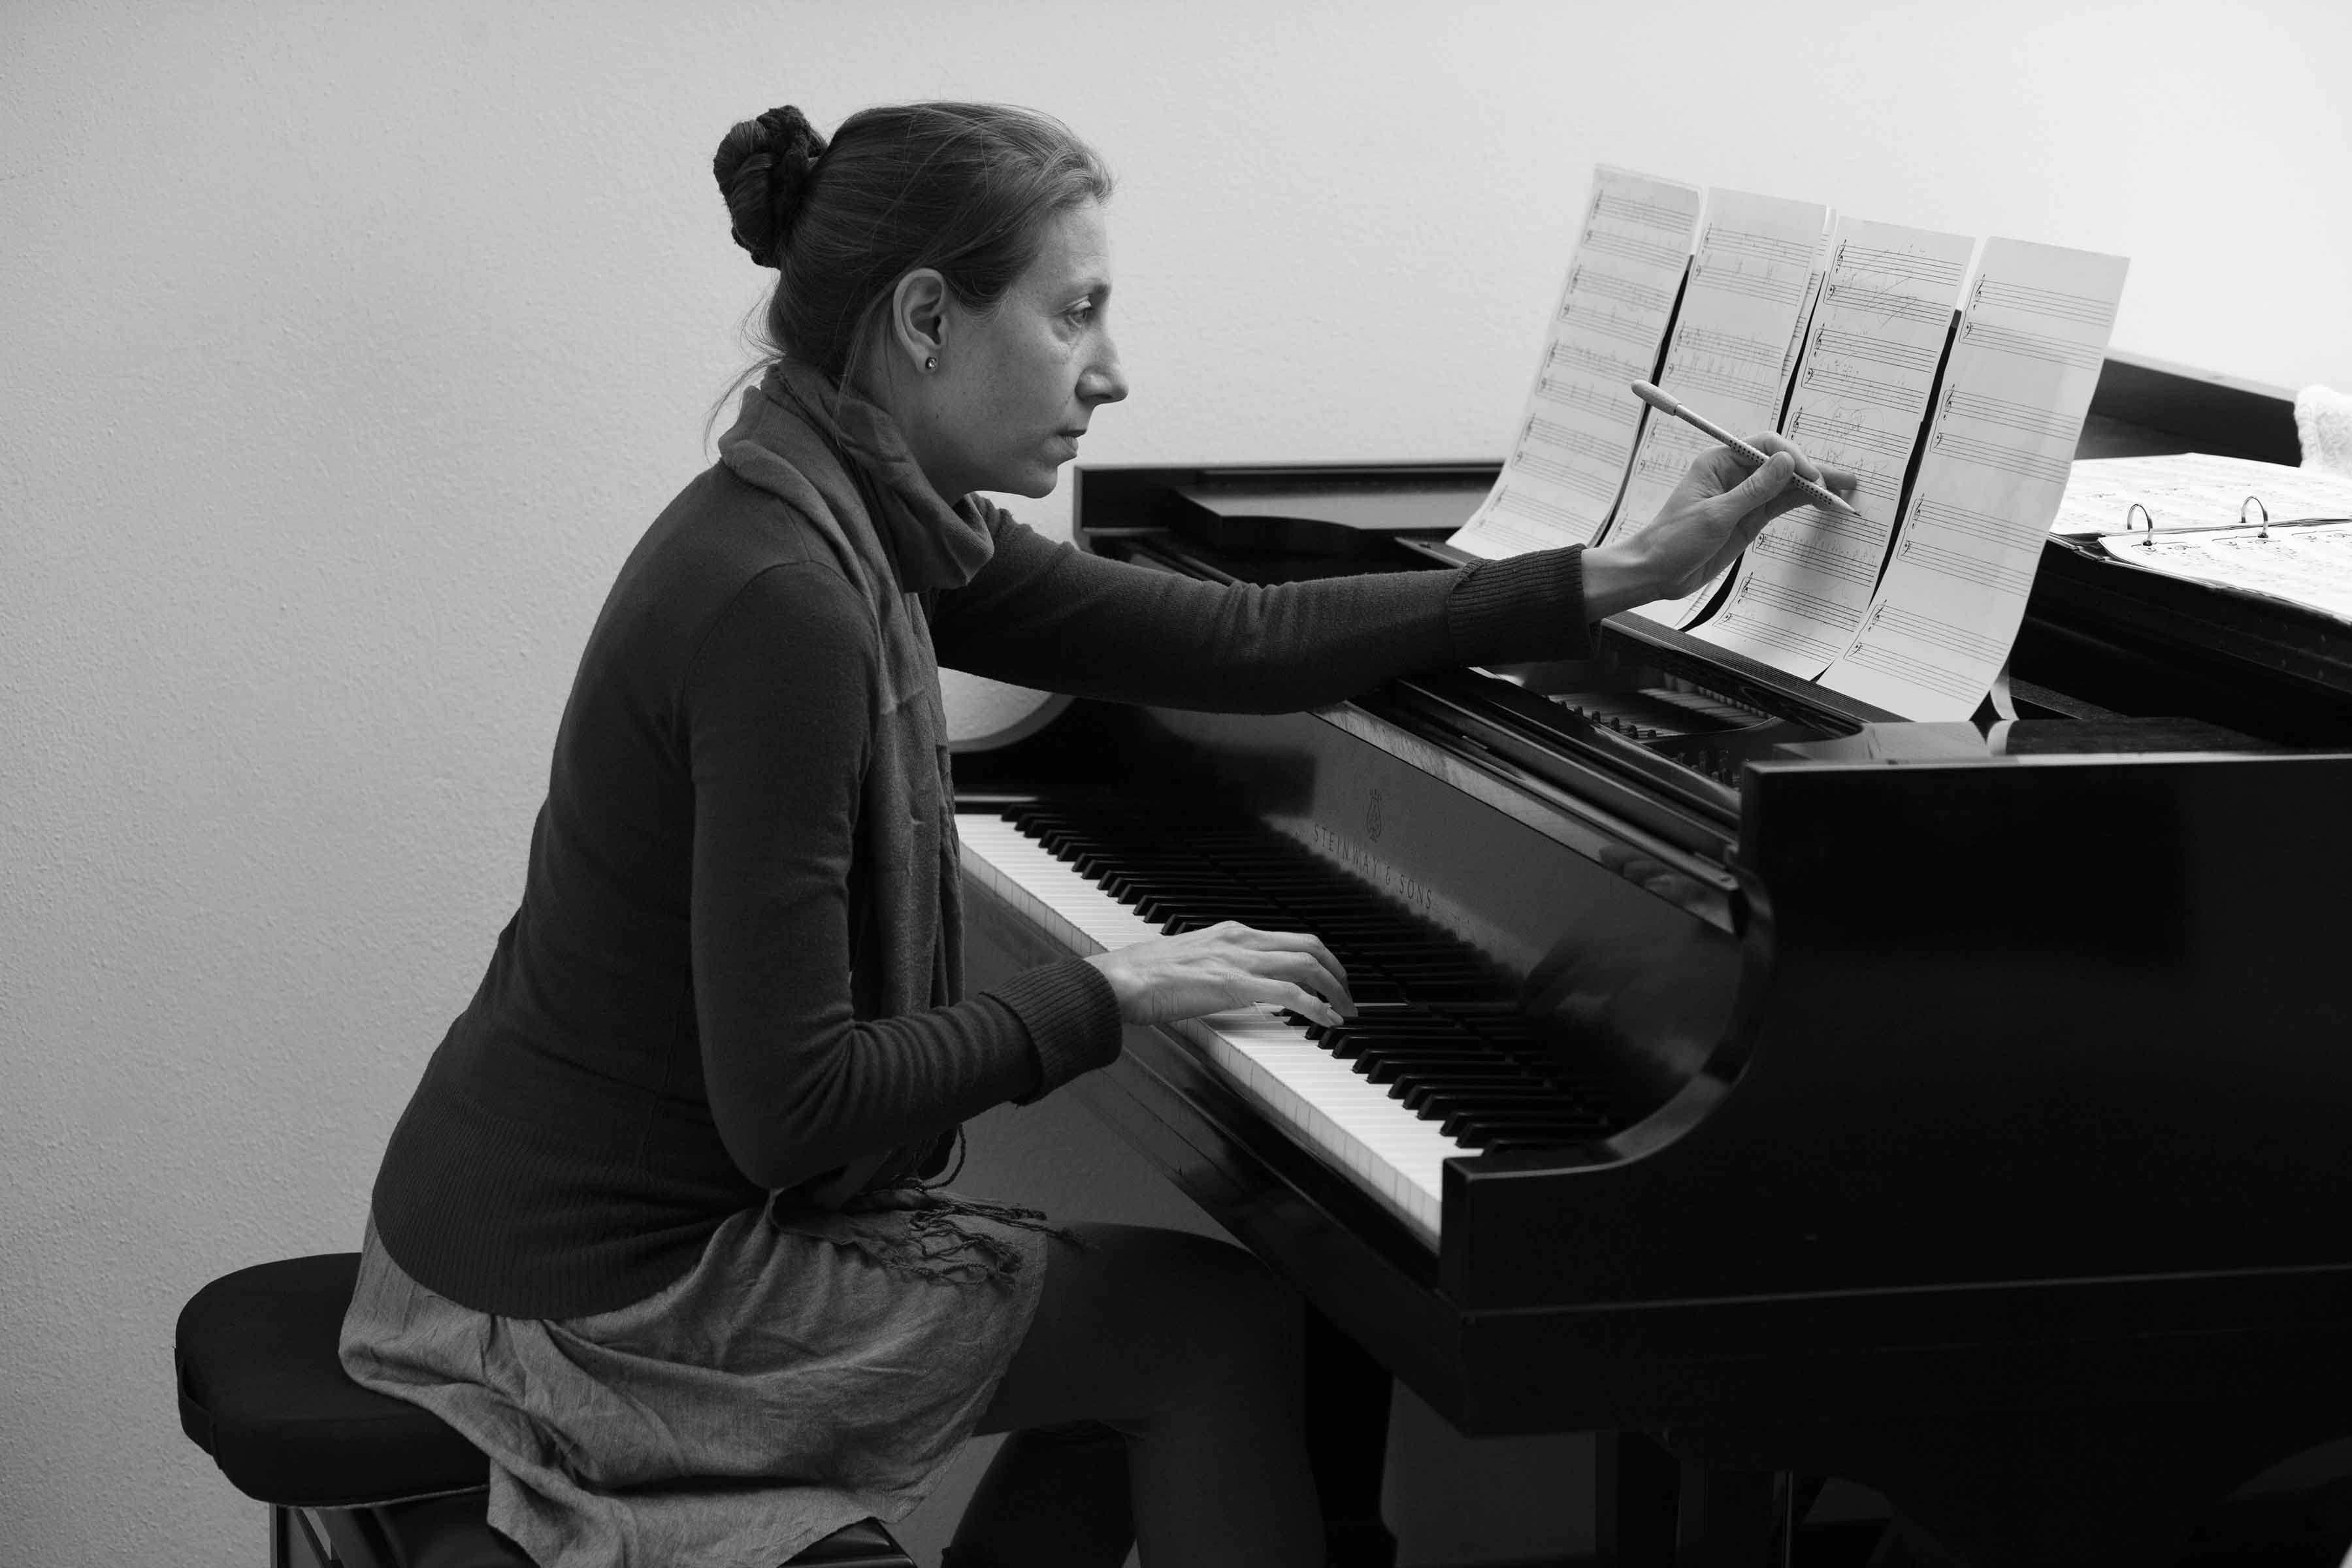 Eva composing at the piano